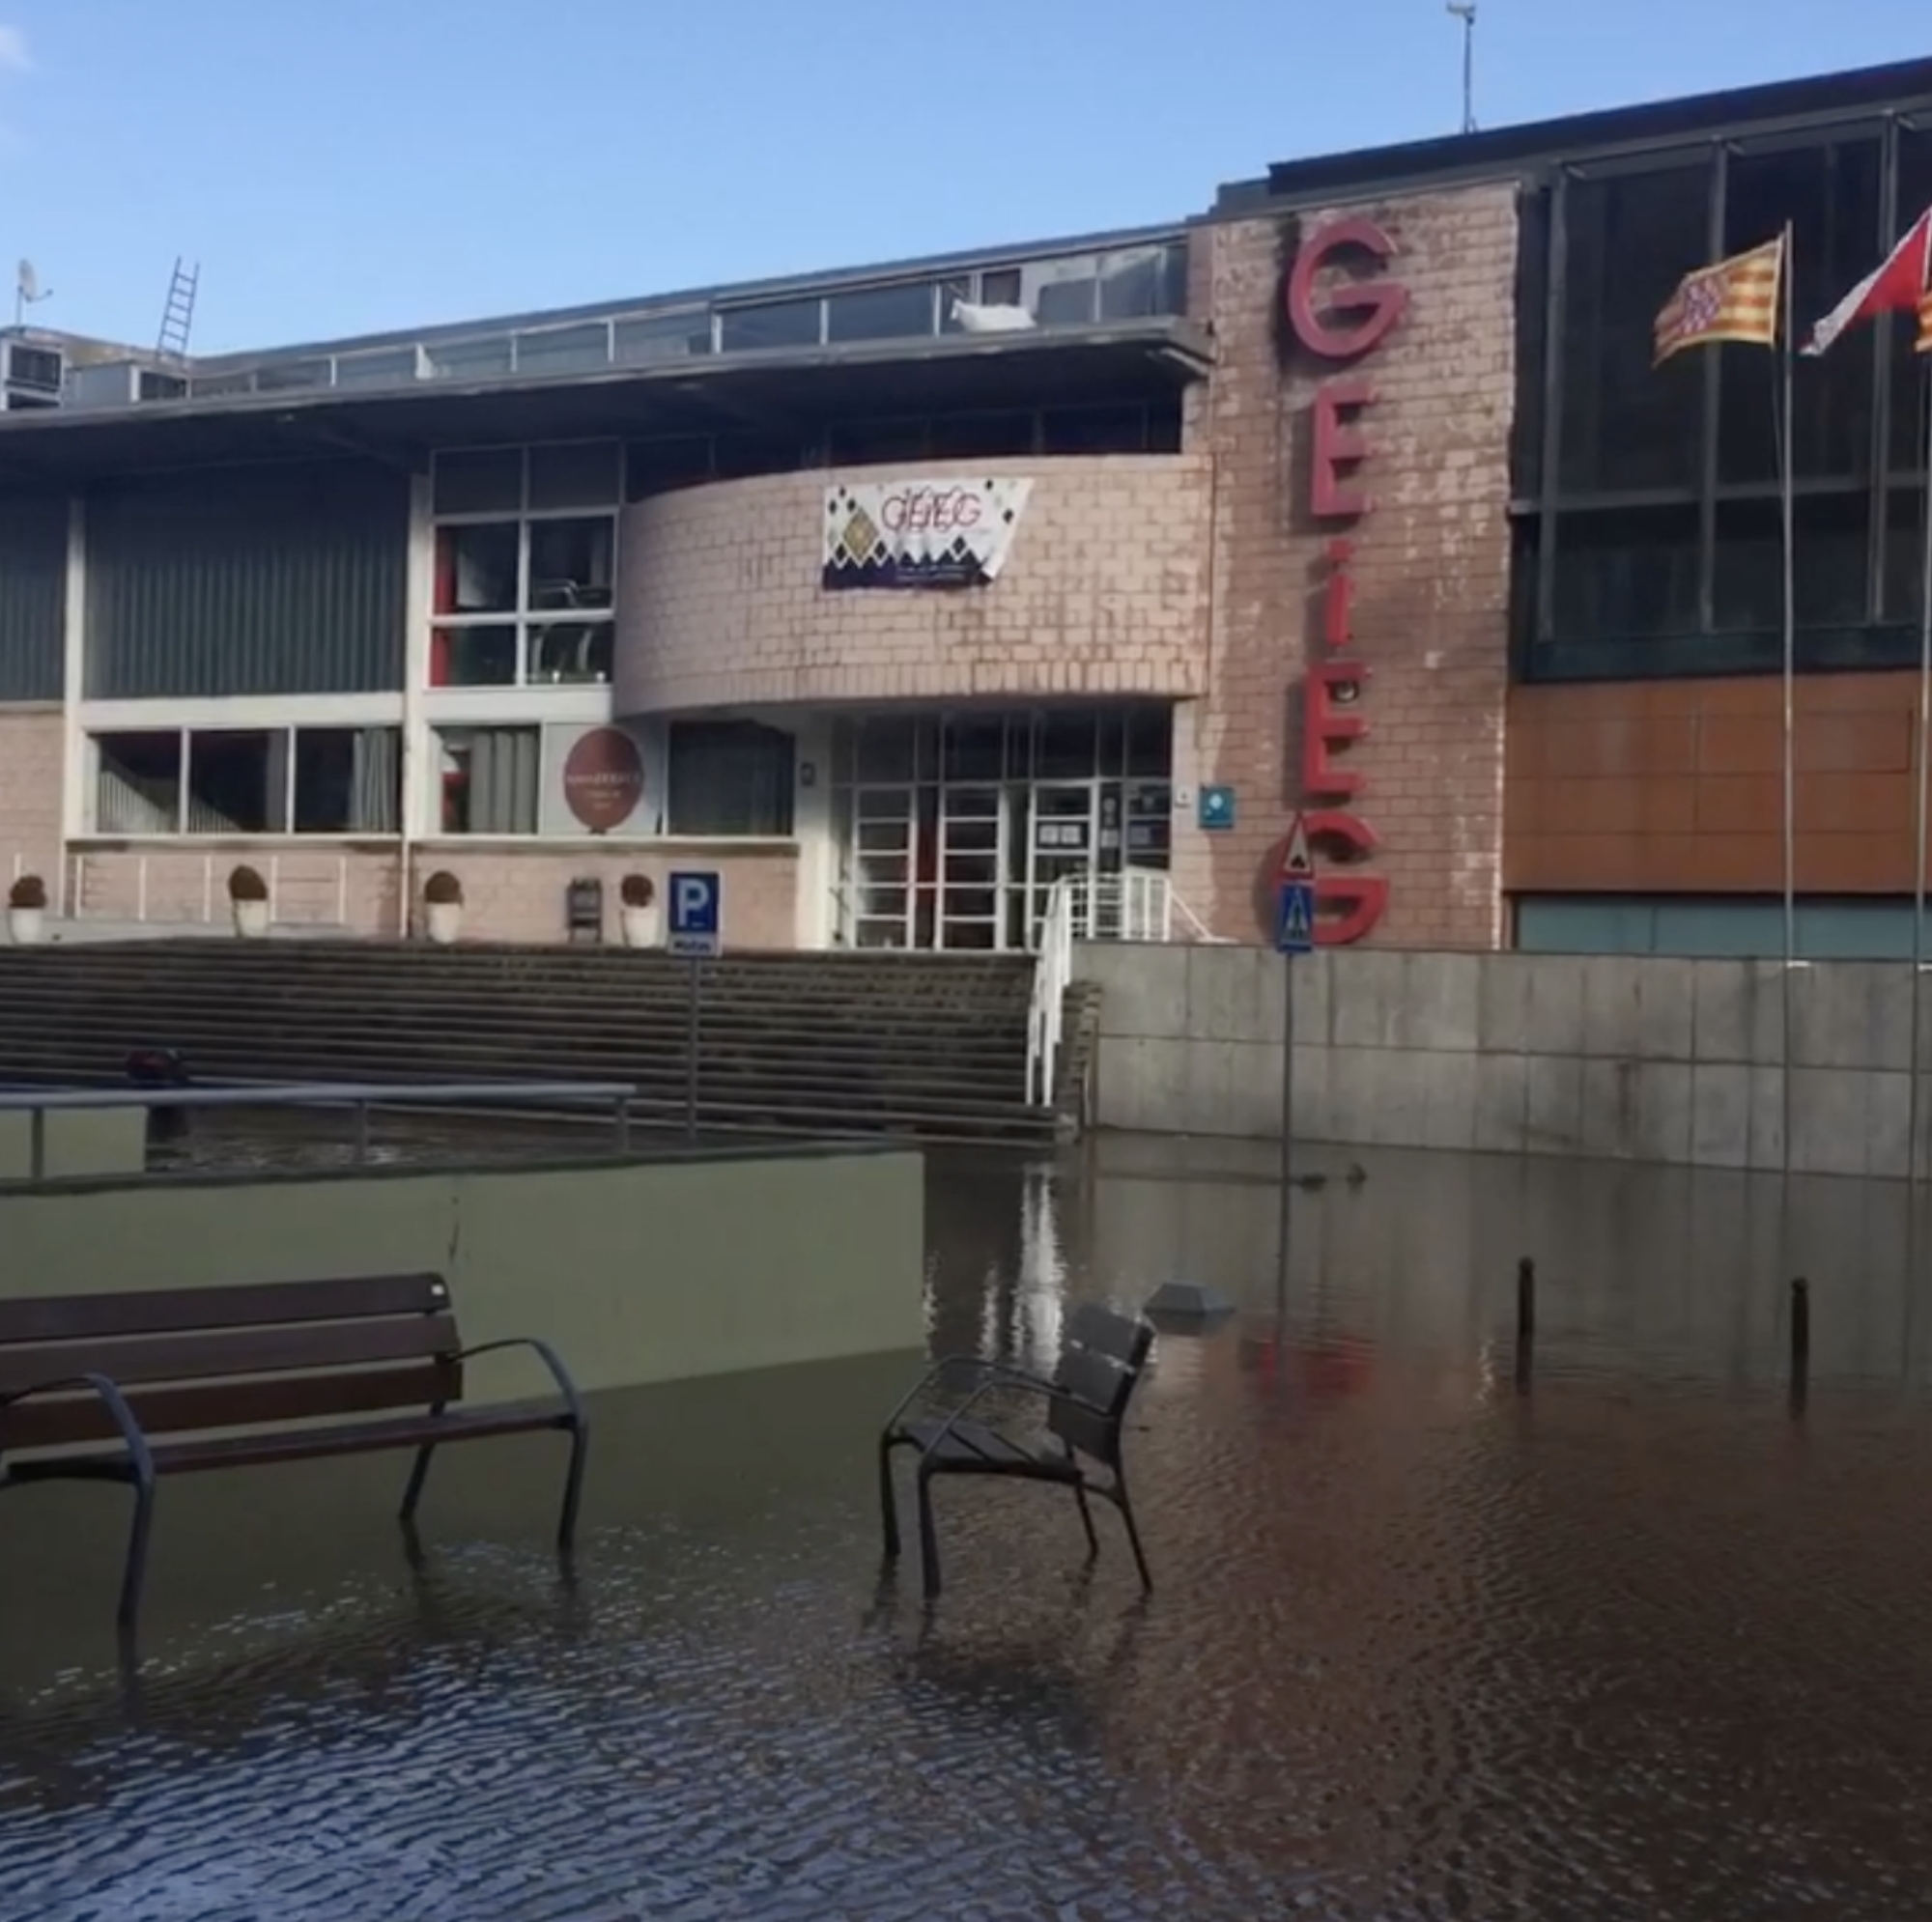 L'històric club GEiEG, en crisi per les inundacions del Gloria